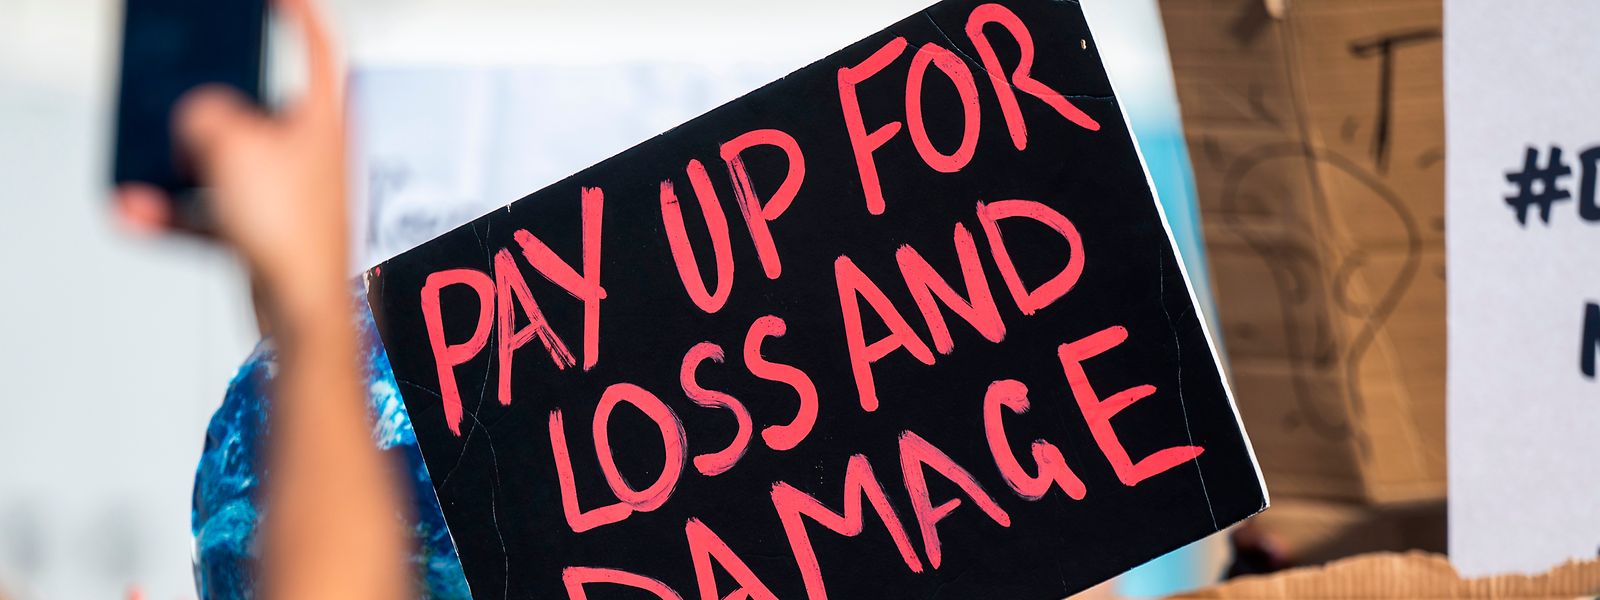 „Pay up for loss and damage" („Für Verlust und Beschädigung aufkommen“) fordern Demonstranten am Rande des Weltklimagipfels in Scharm el Scheich.